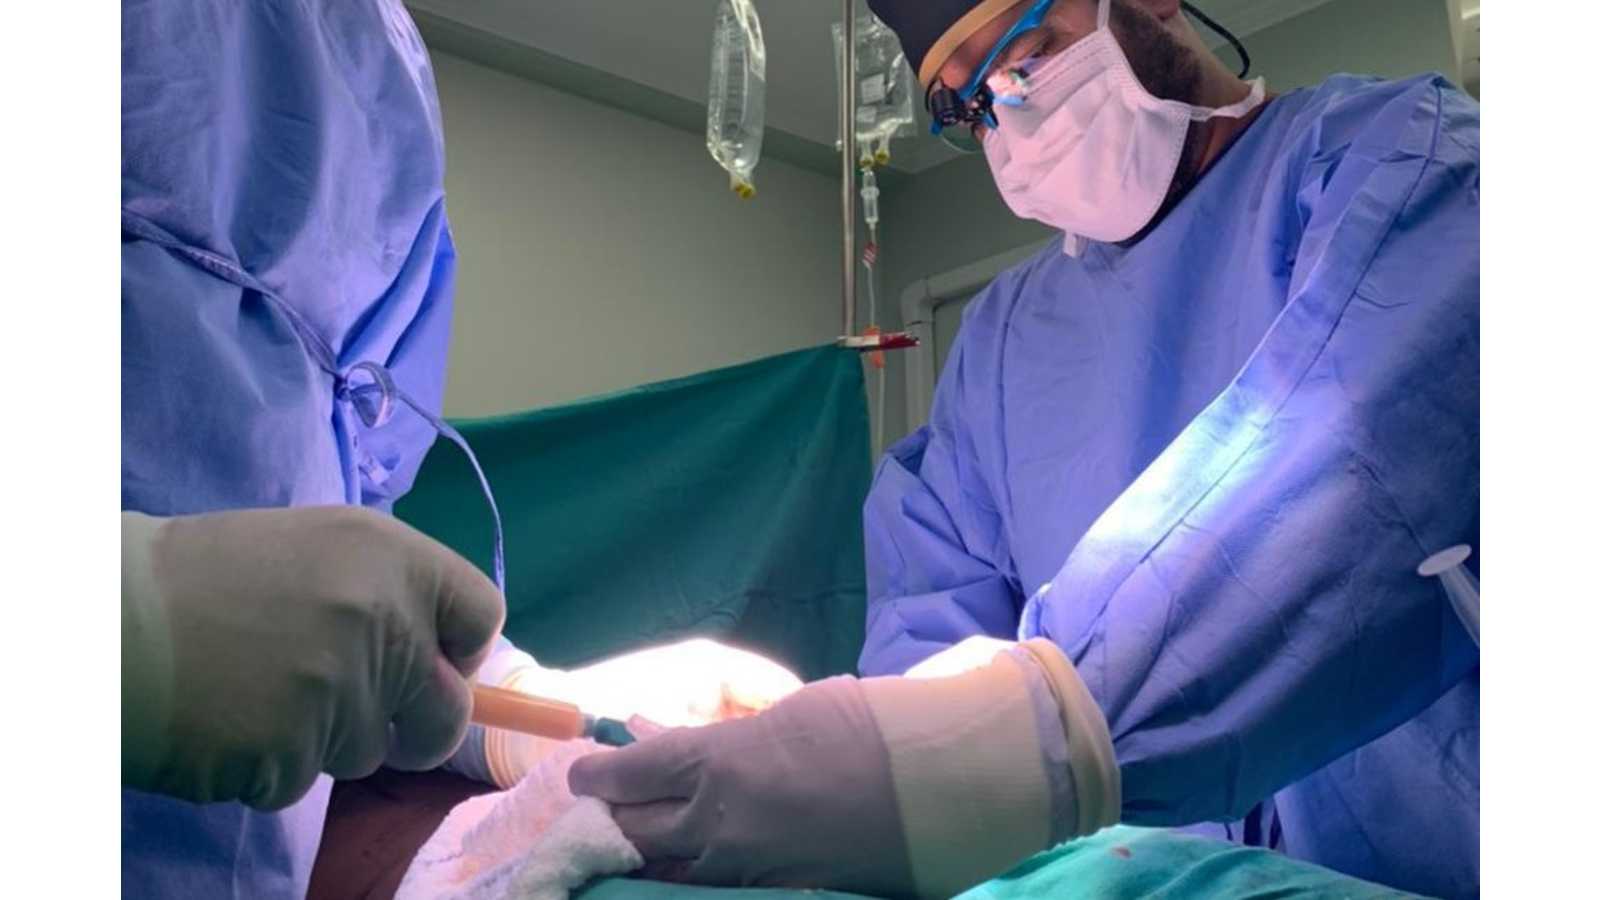 Procura por cirurgia de aumento peniano cresce após cantor sertanejo fazer a operação